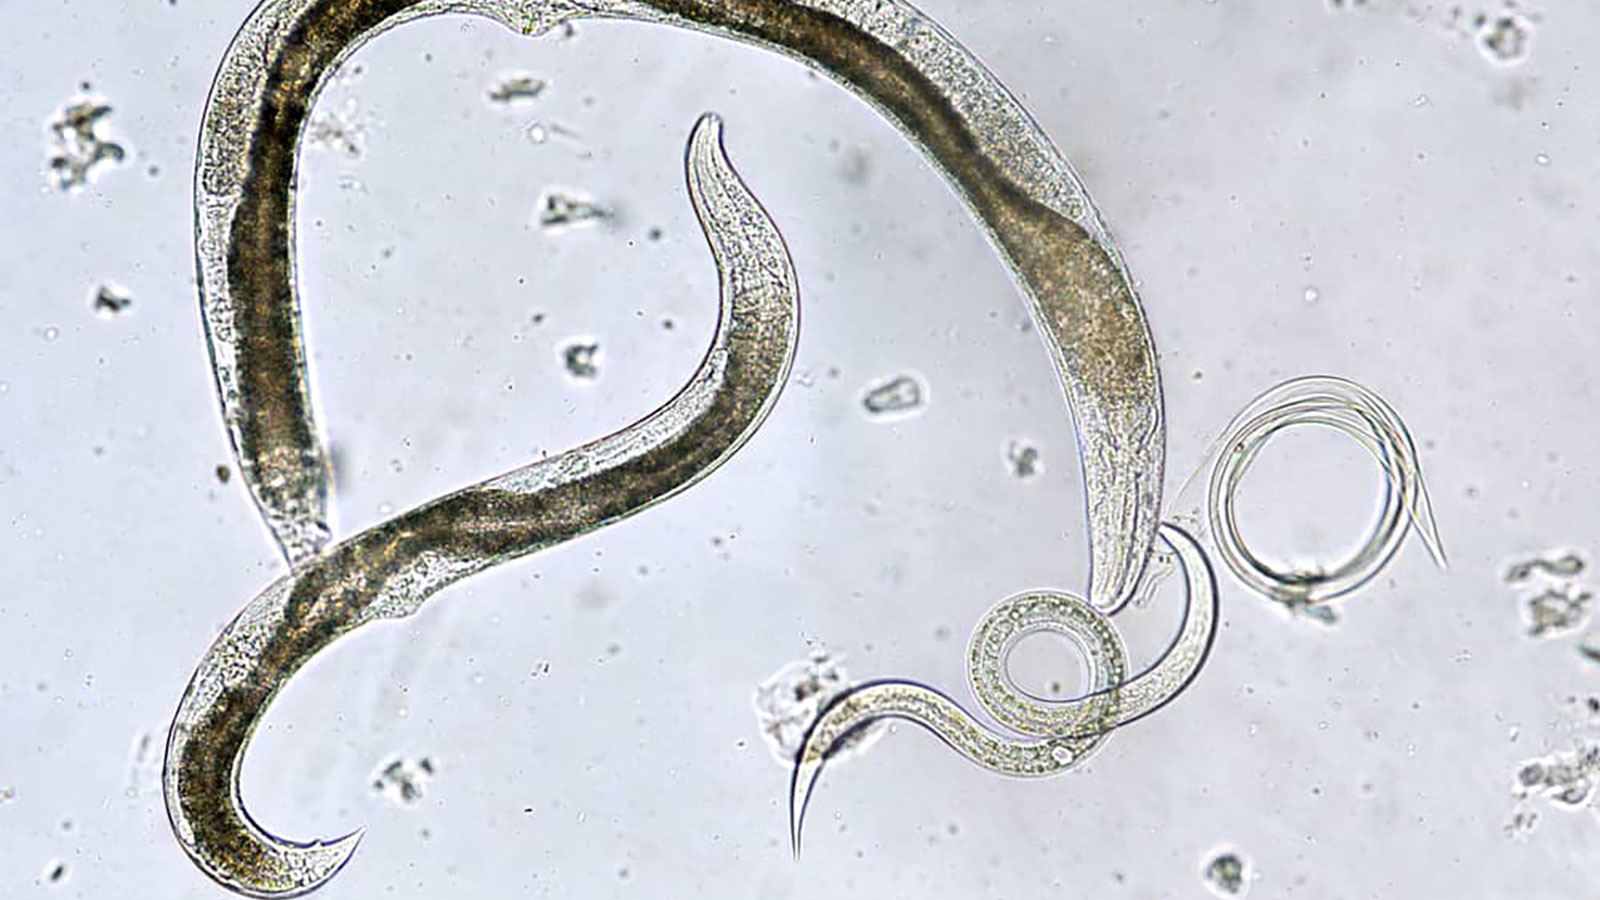 Foto colorida feita através de um microscópio de nematoides, insetos benéficos, em fundo cinza claro